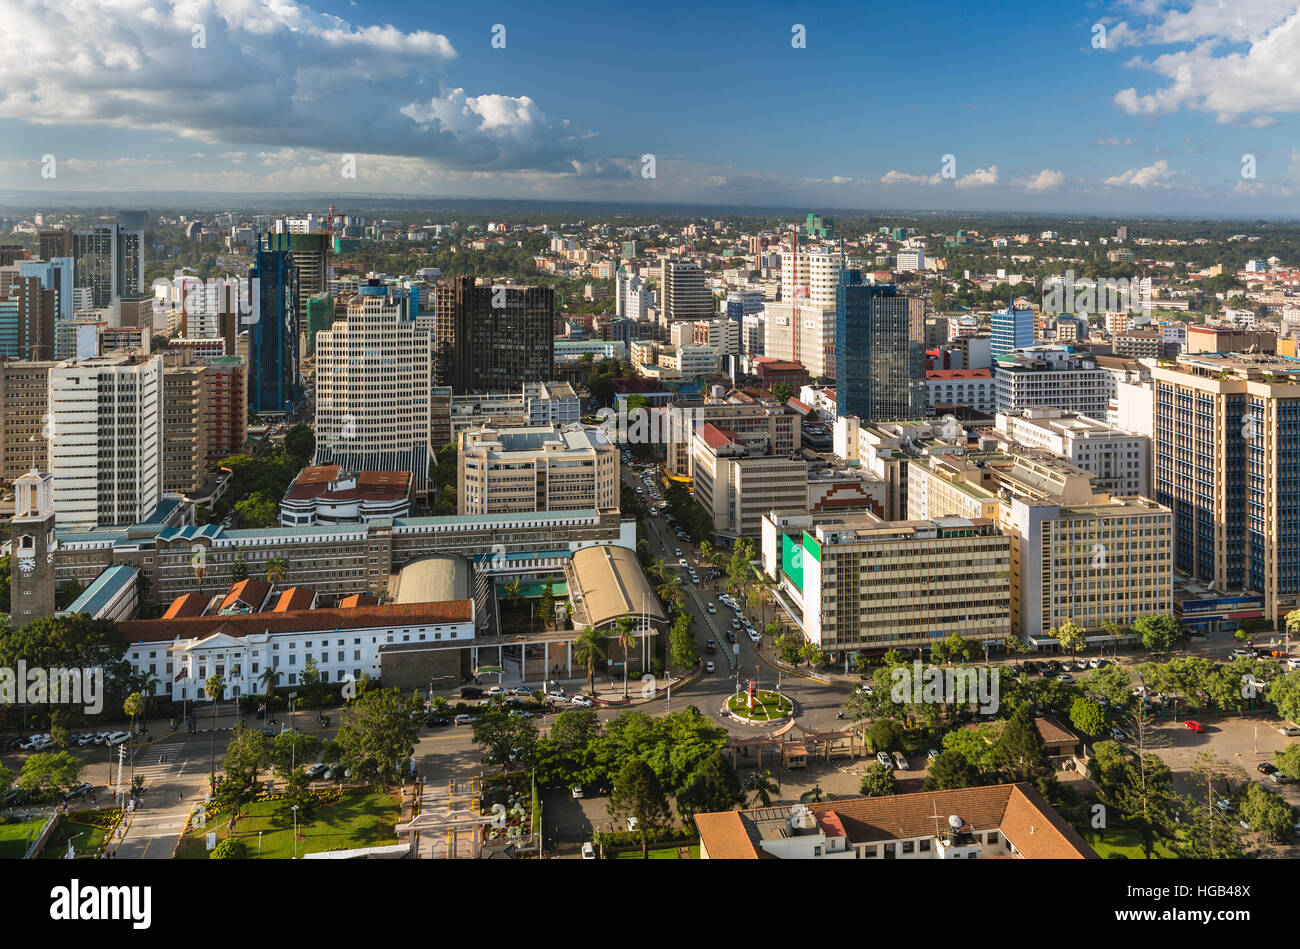 Ver más Ayuntamiento y highrises modernas y calles en el norte del distrito de negocios de Nairobi, Kenya. Foto de stock